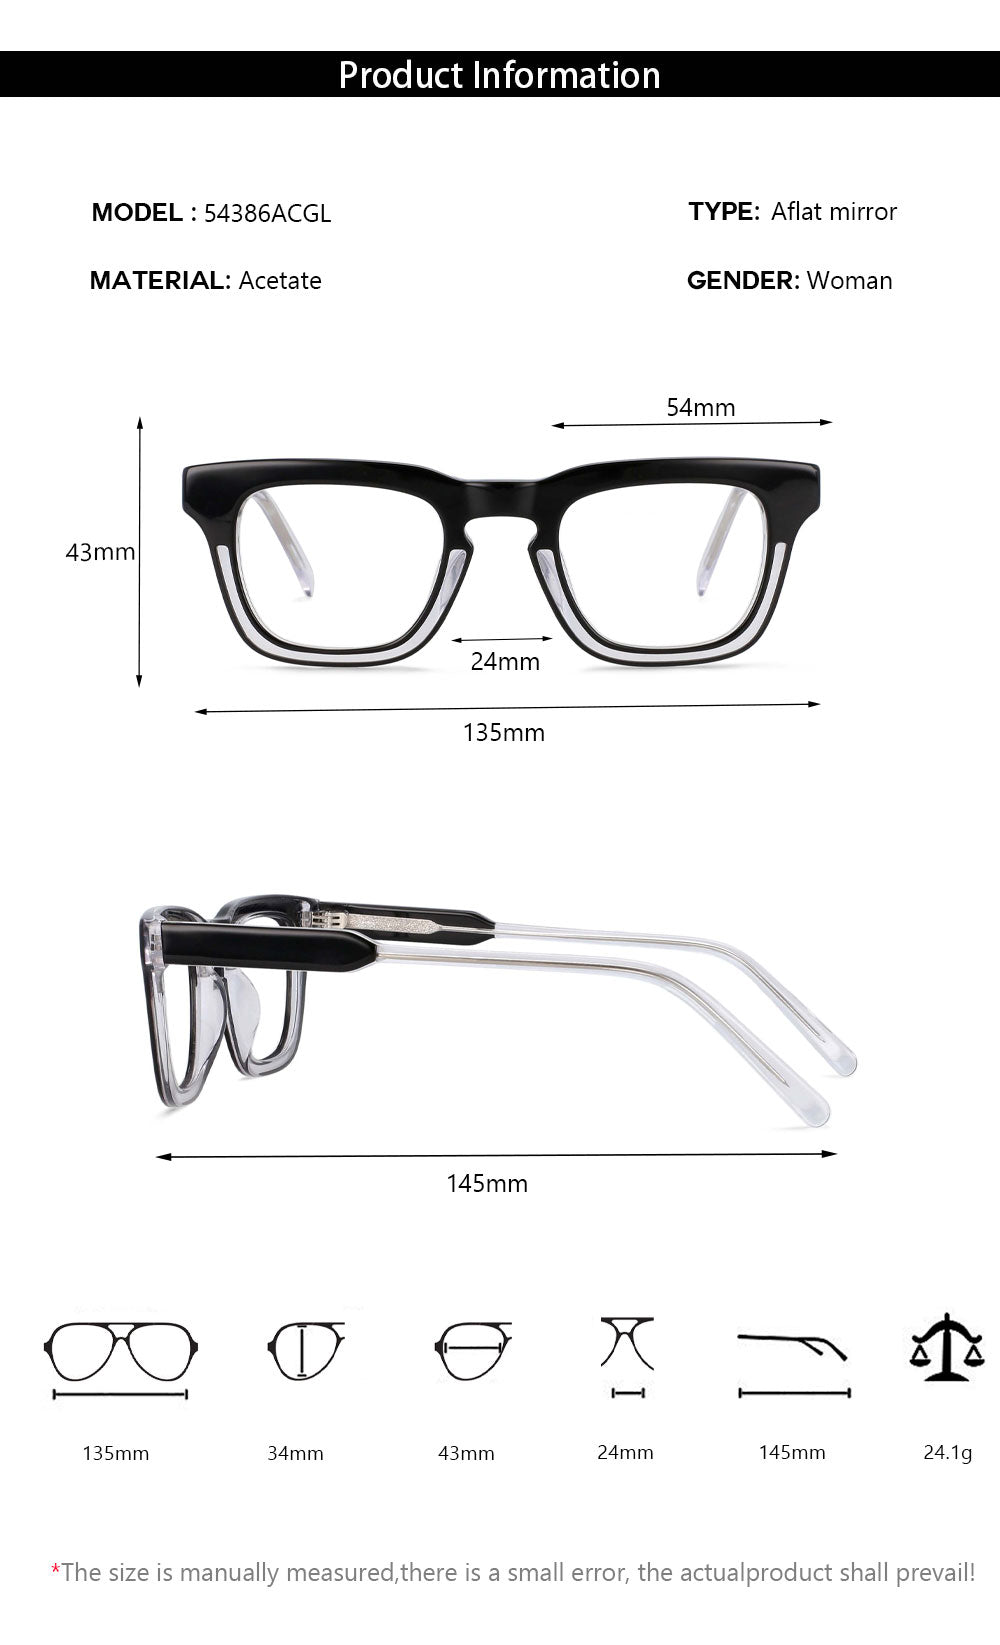 CCSpace Unisex Full Rim Square Acetate Frame Eyeglasses 54386 Full Rim CCspace   